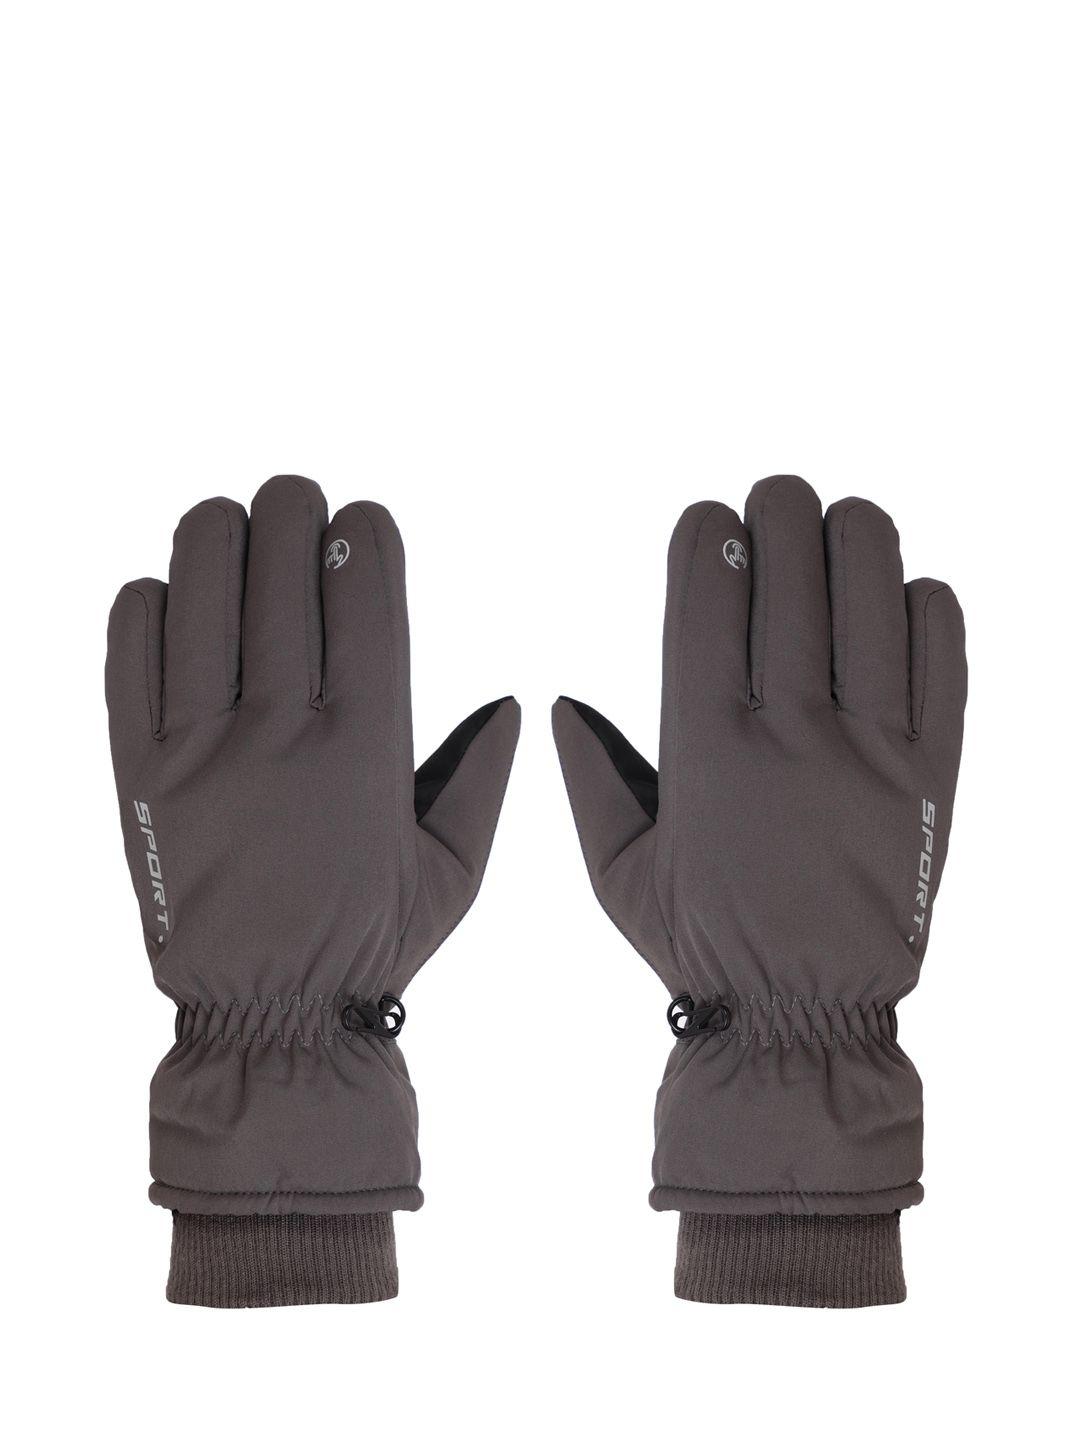 fabseasons unisex charcoal grey waterproof winter gloves